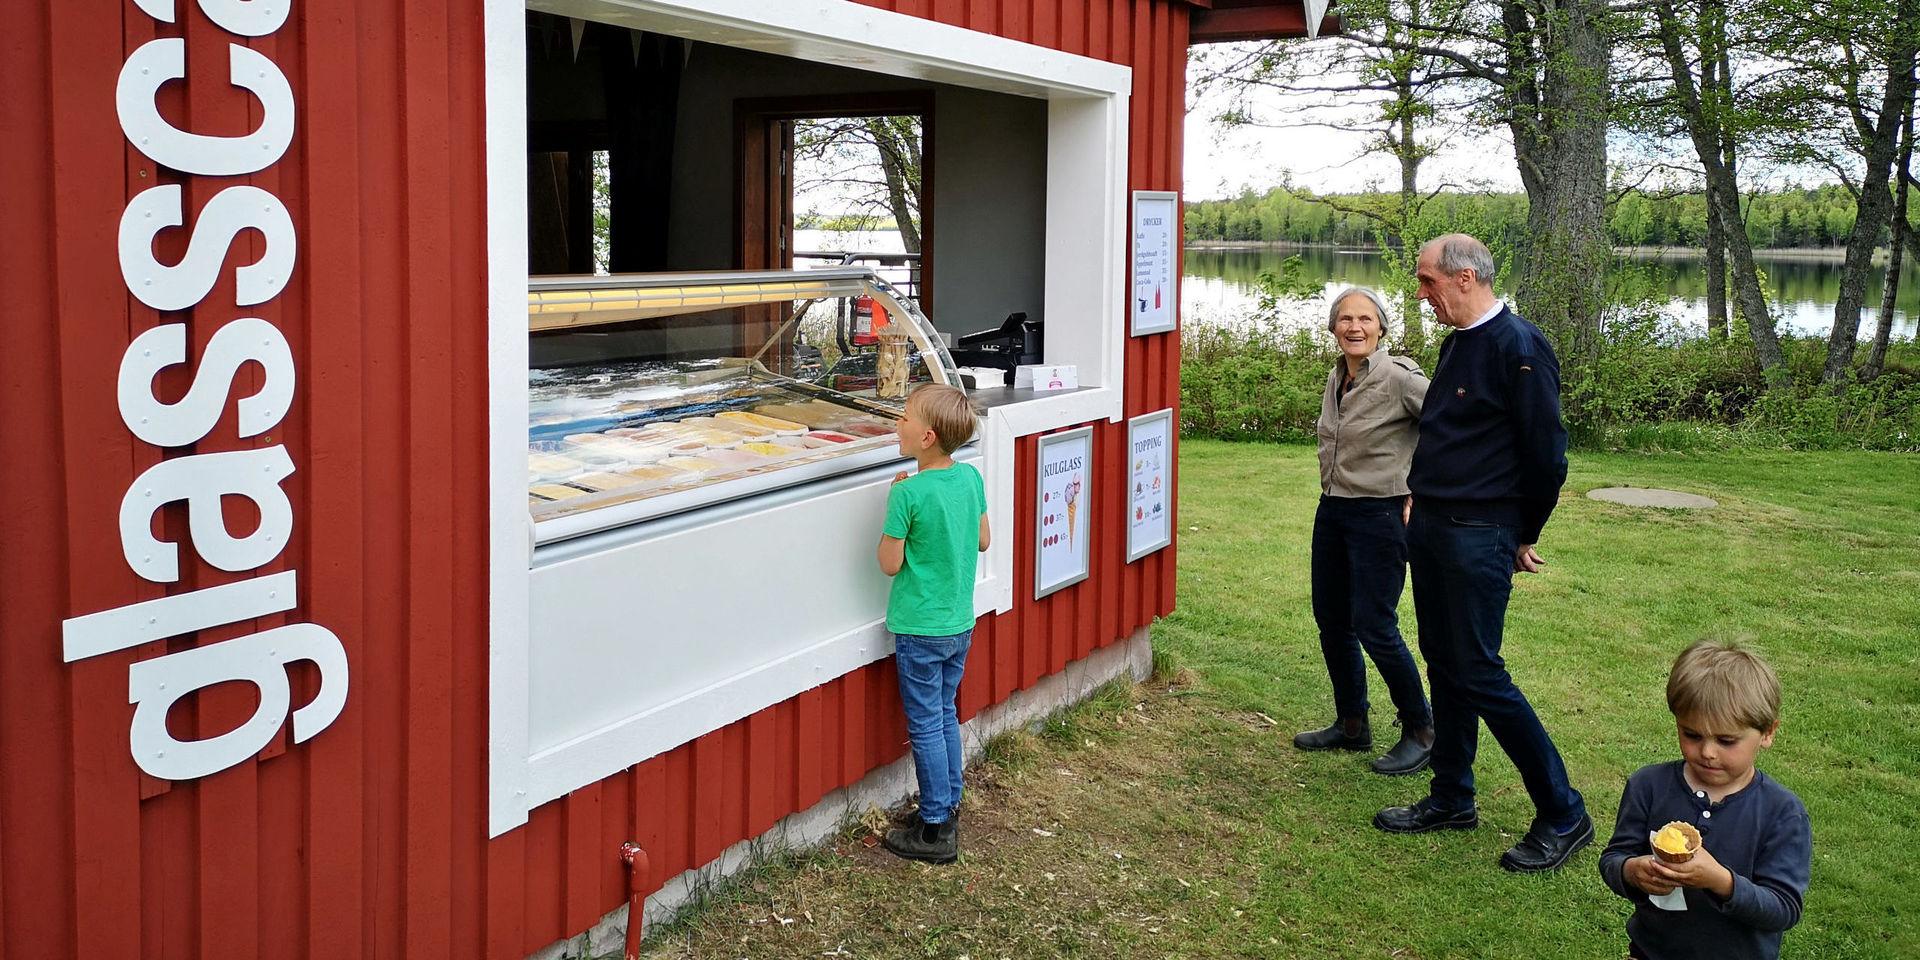 Tiraholms fisk tog ett snabbt beslut om att bygga en ny glassbar, som komplement till restaurangen, gårdsbutiken och hotellet.